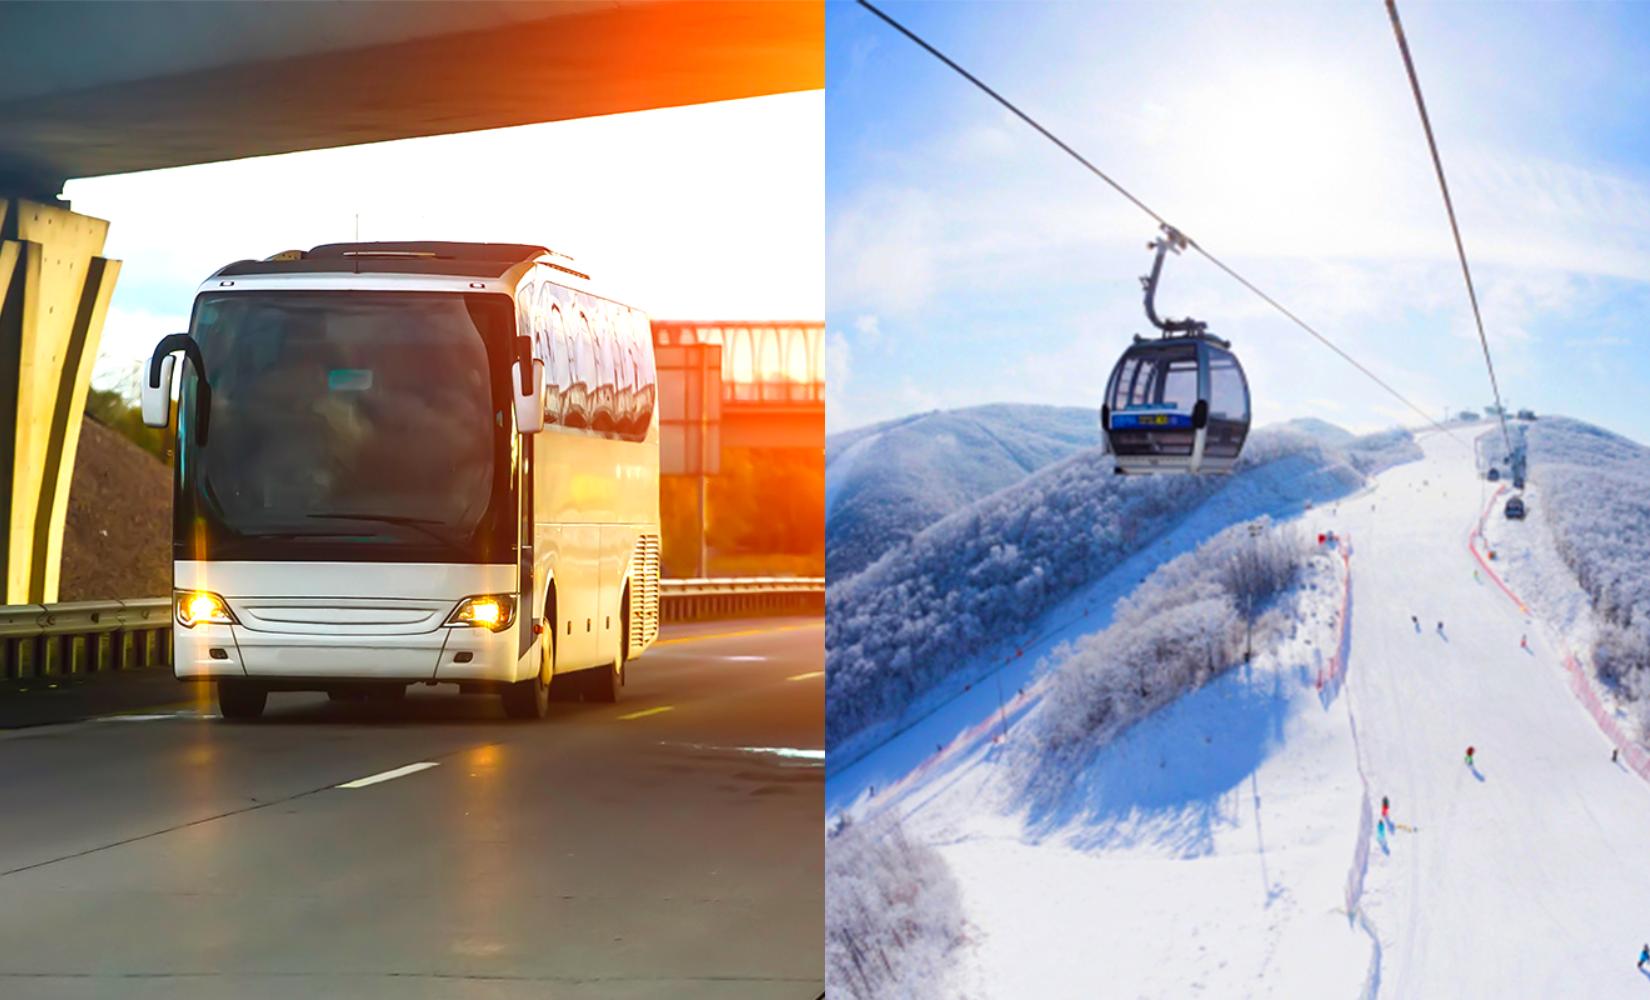 Vé xe buýt đưa đón khu trượt tuyết Vivaldi Park từ Seoul siêu tiết kiệm